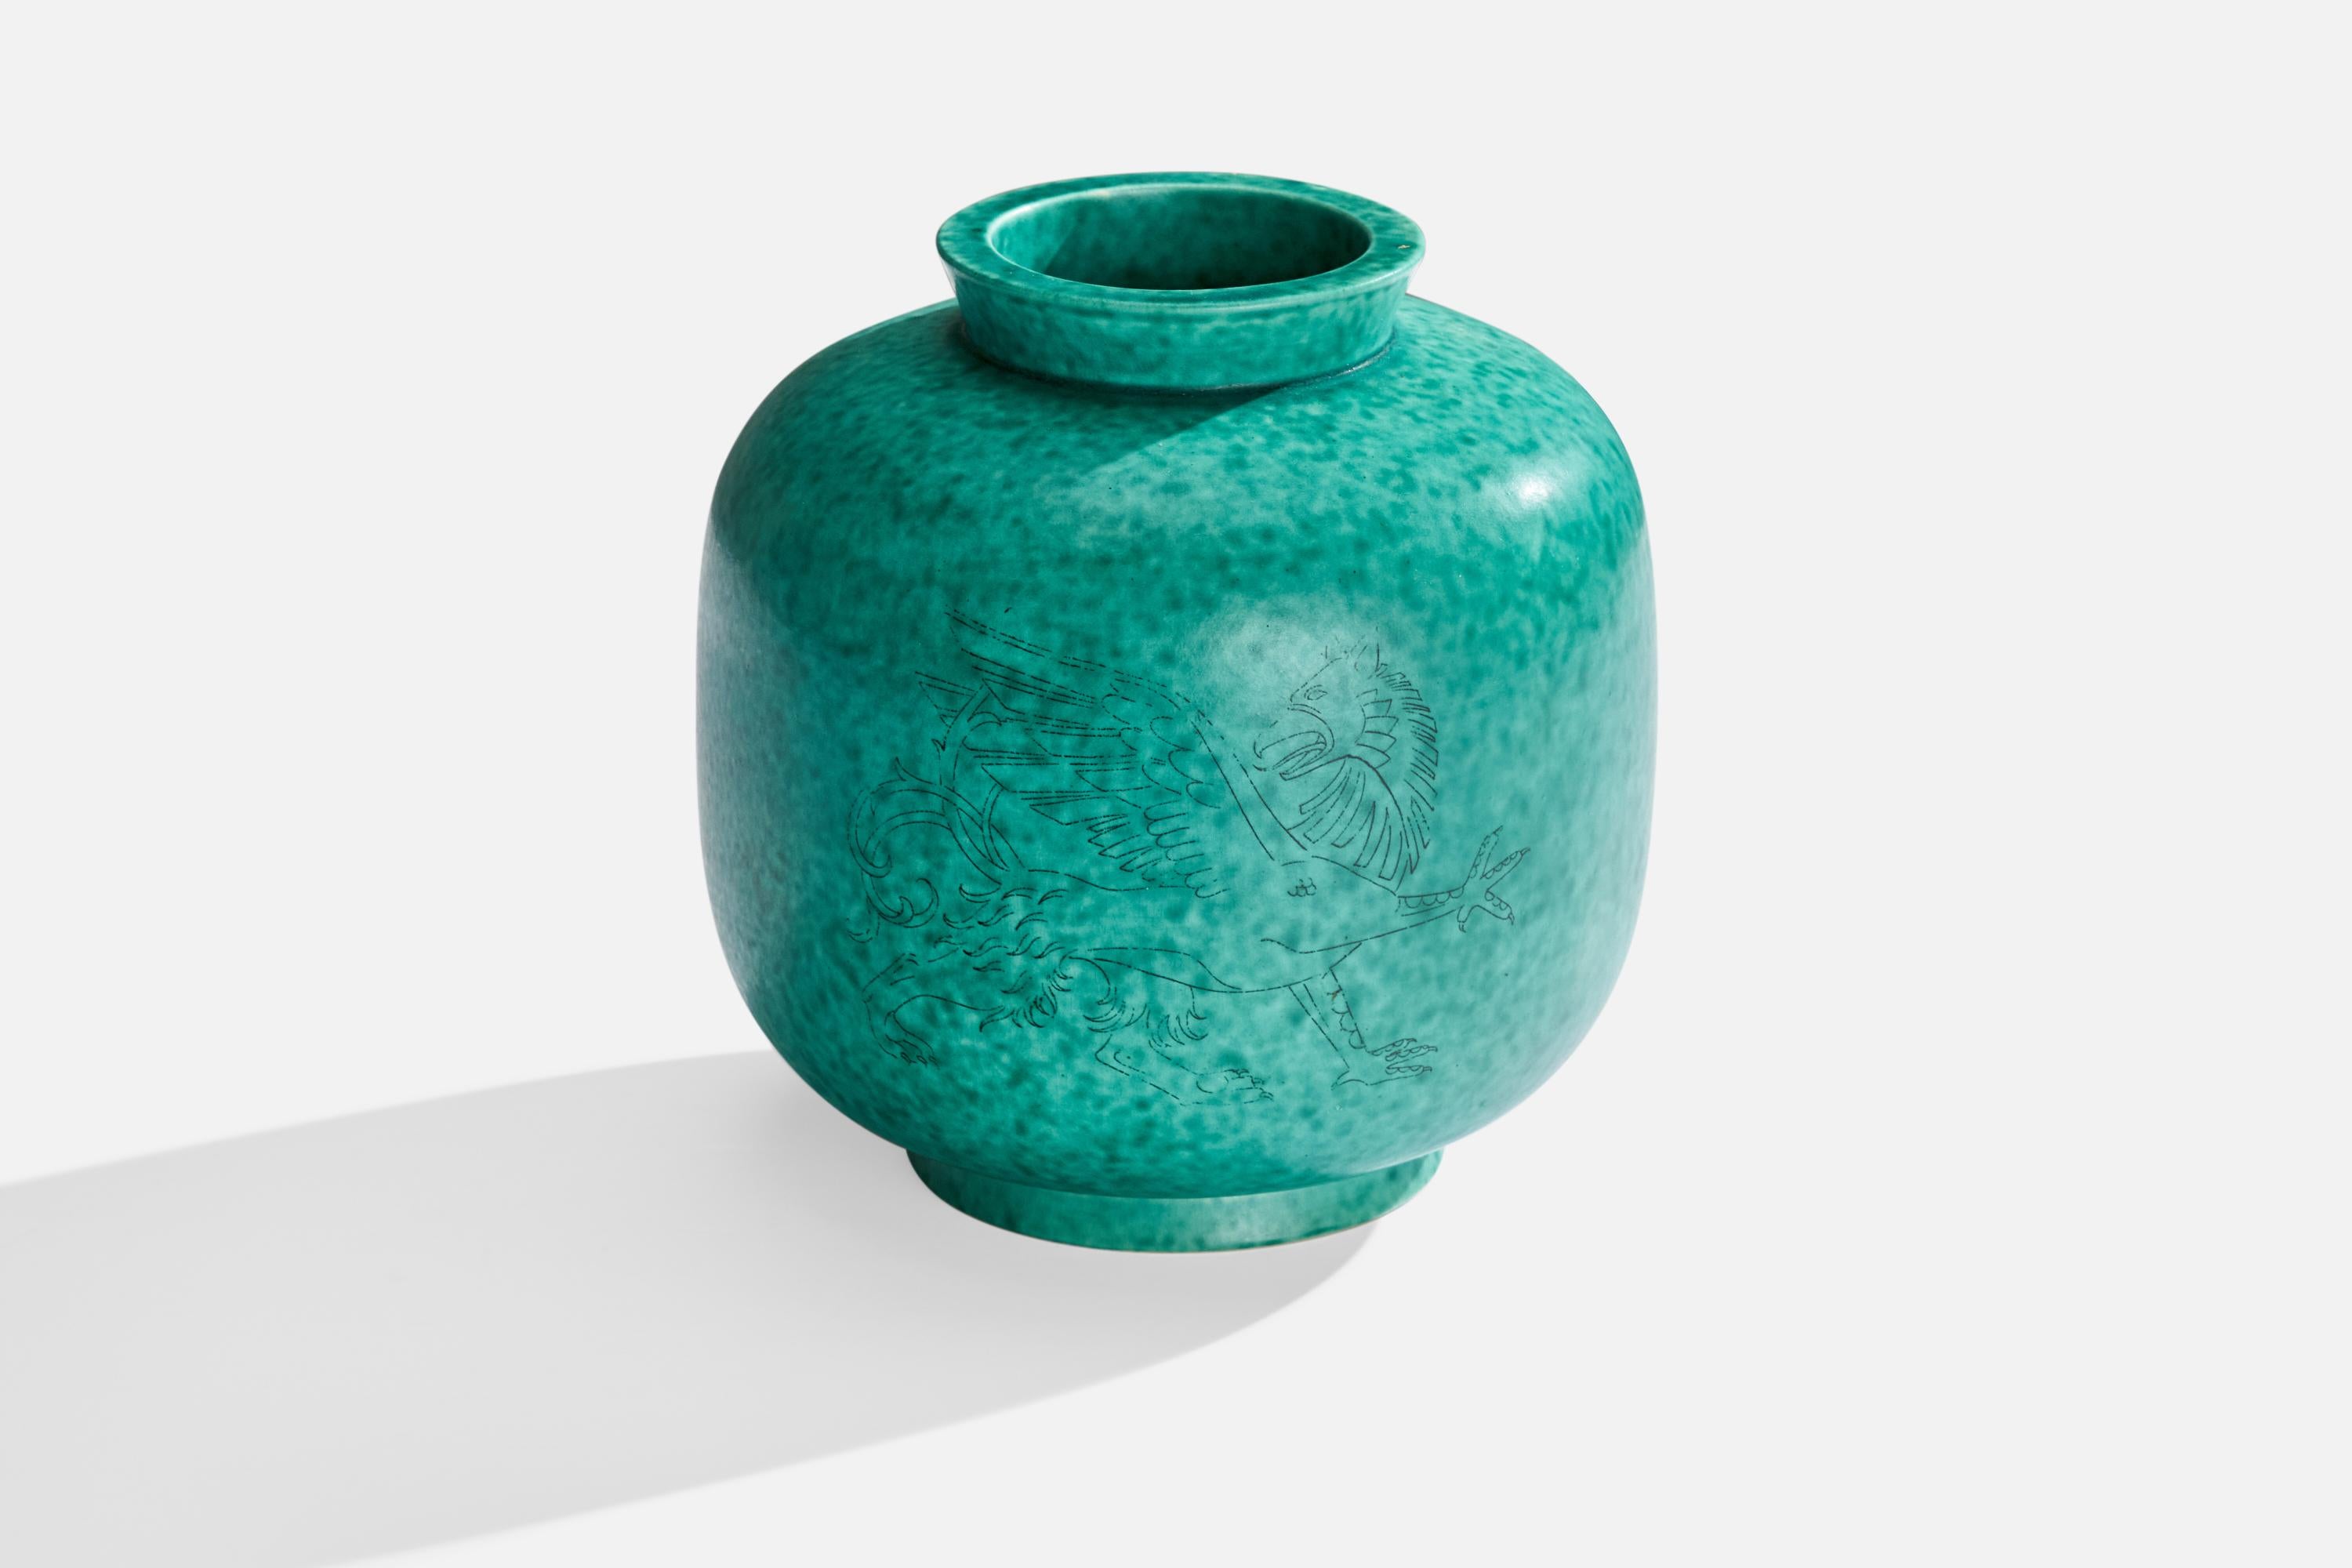 Vase en grès émaillé vert conçu par Wilhelm Kåge et produit par Gustavsberg, Suède, vers les années 1950.